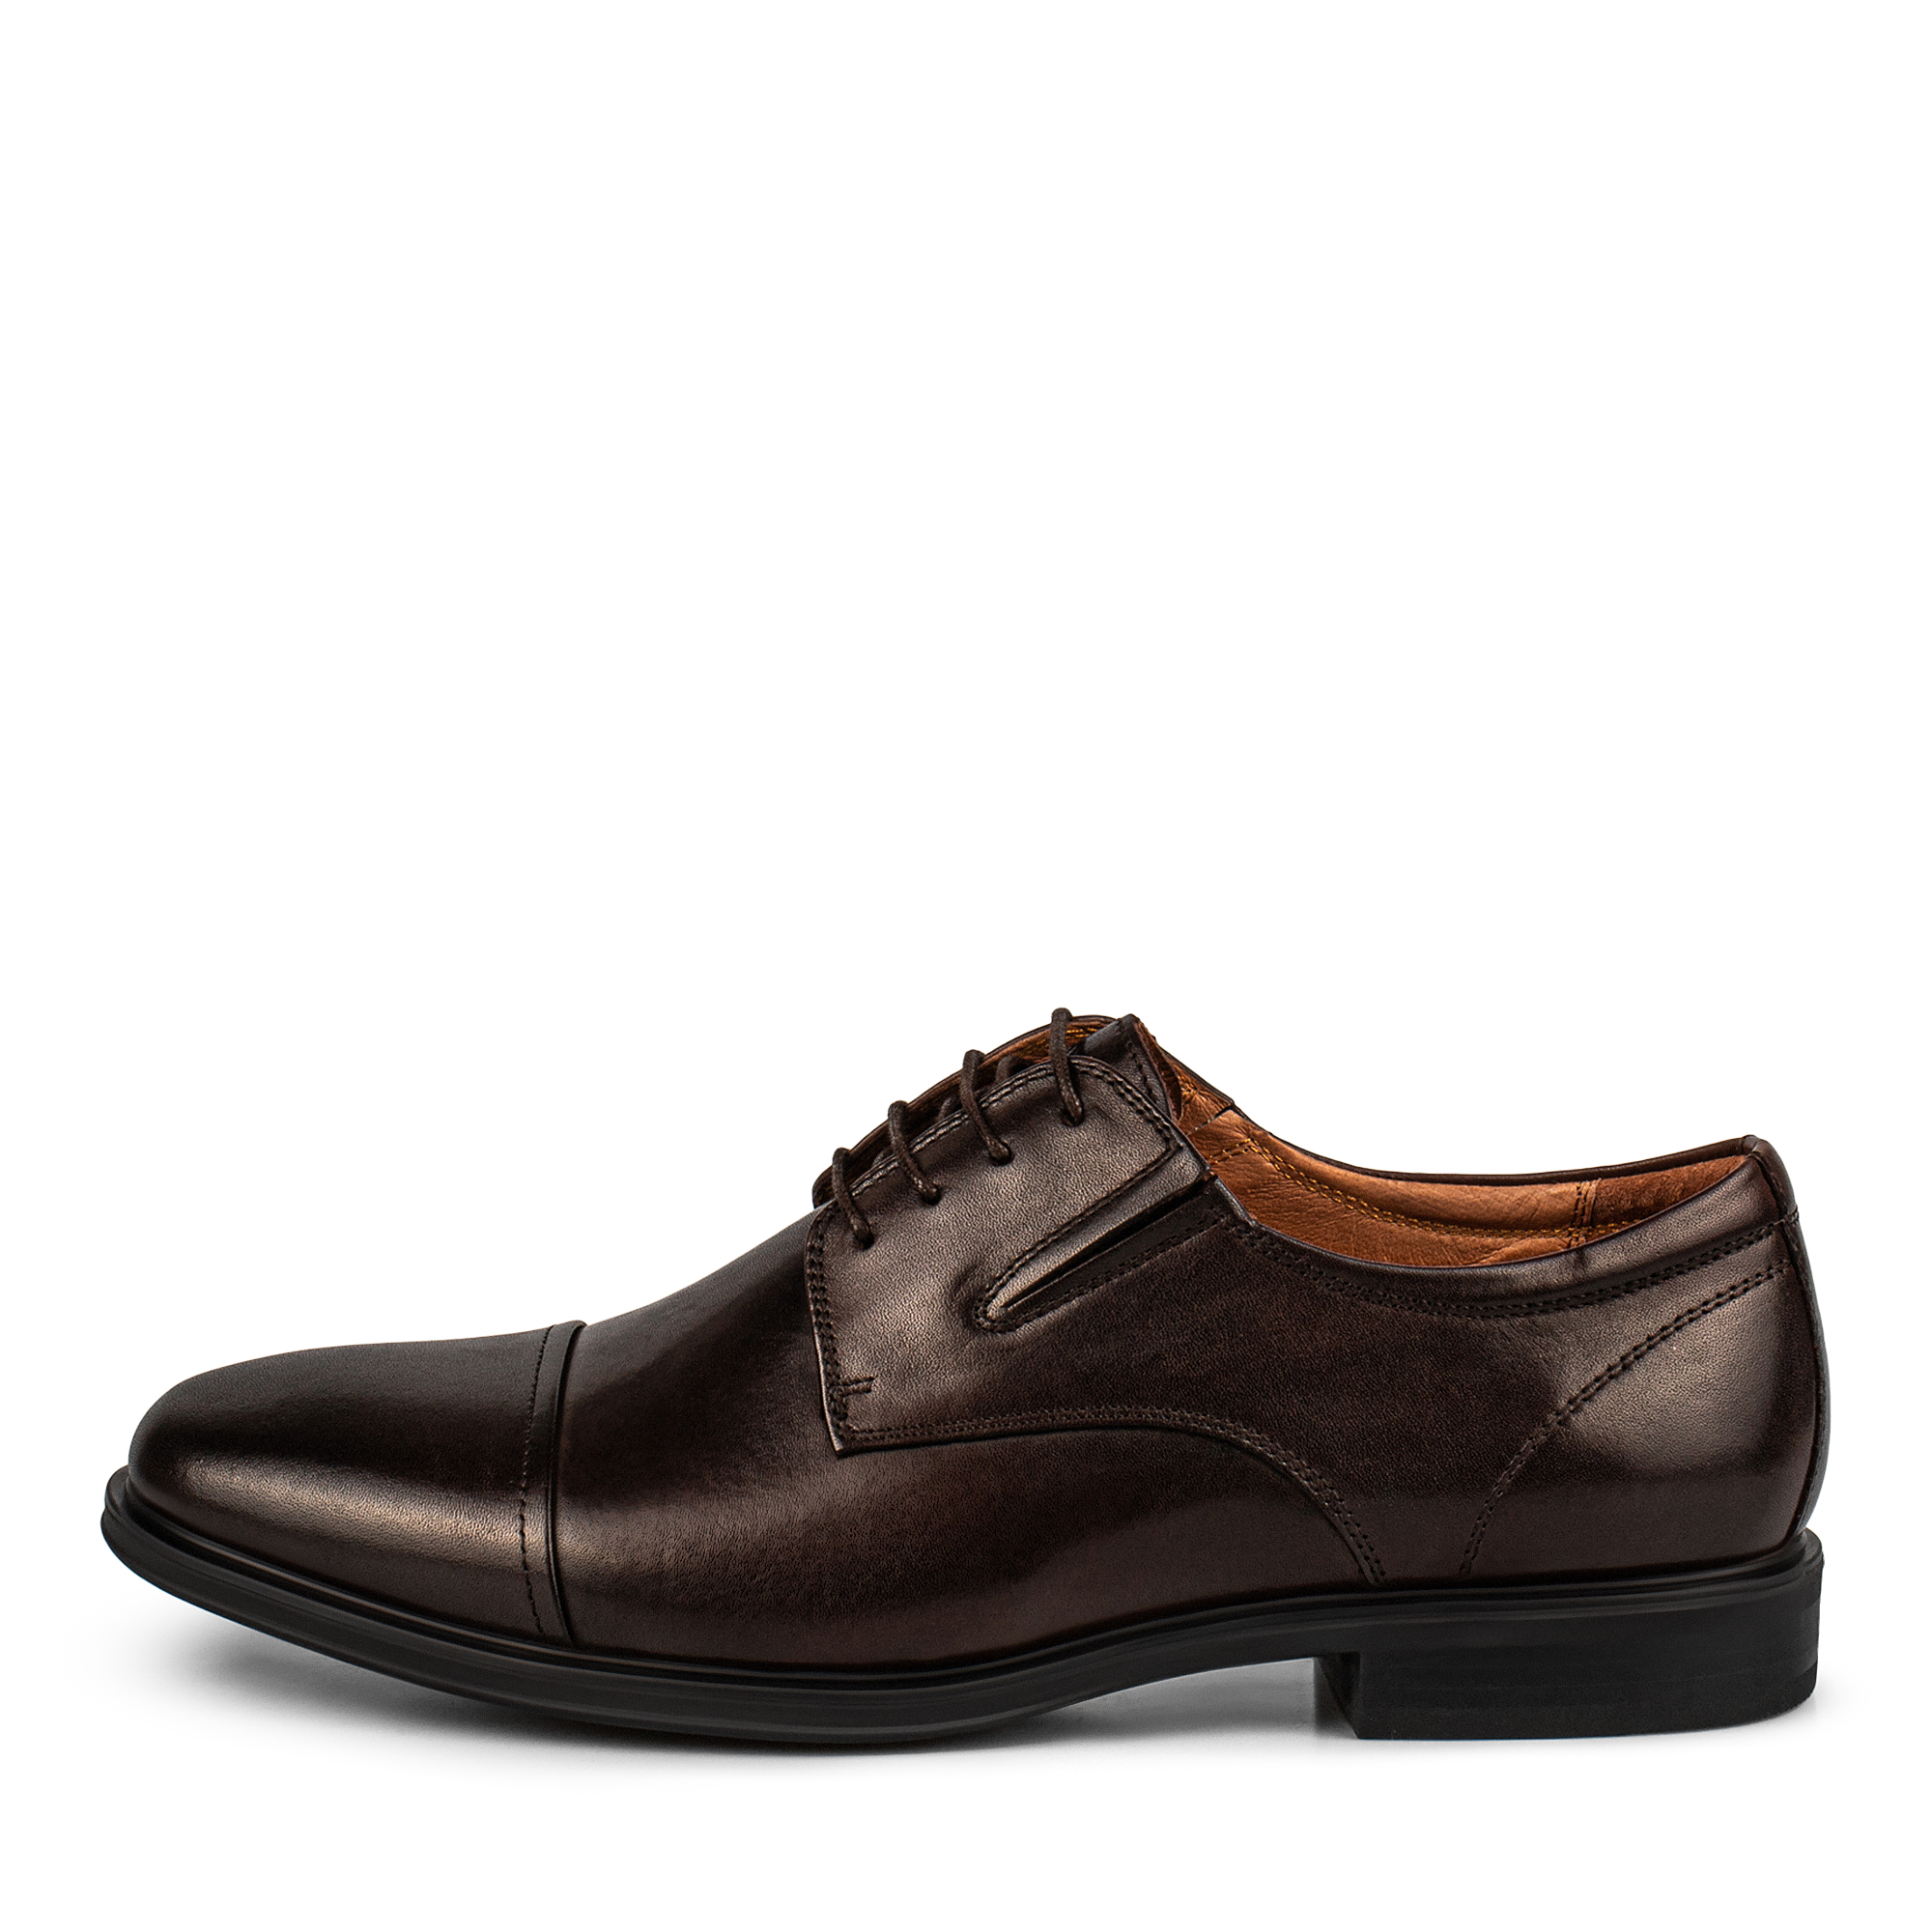 Туфли Thomas Munz 058-027C-1109, цвет темно-коричневый, размер 45